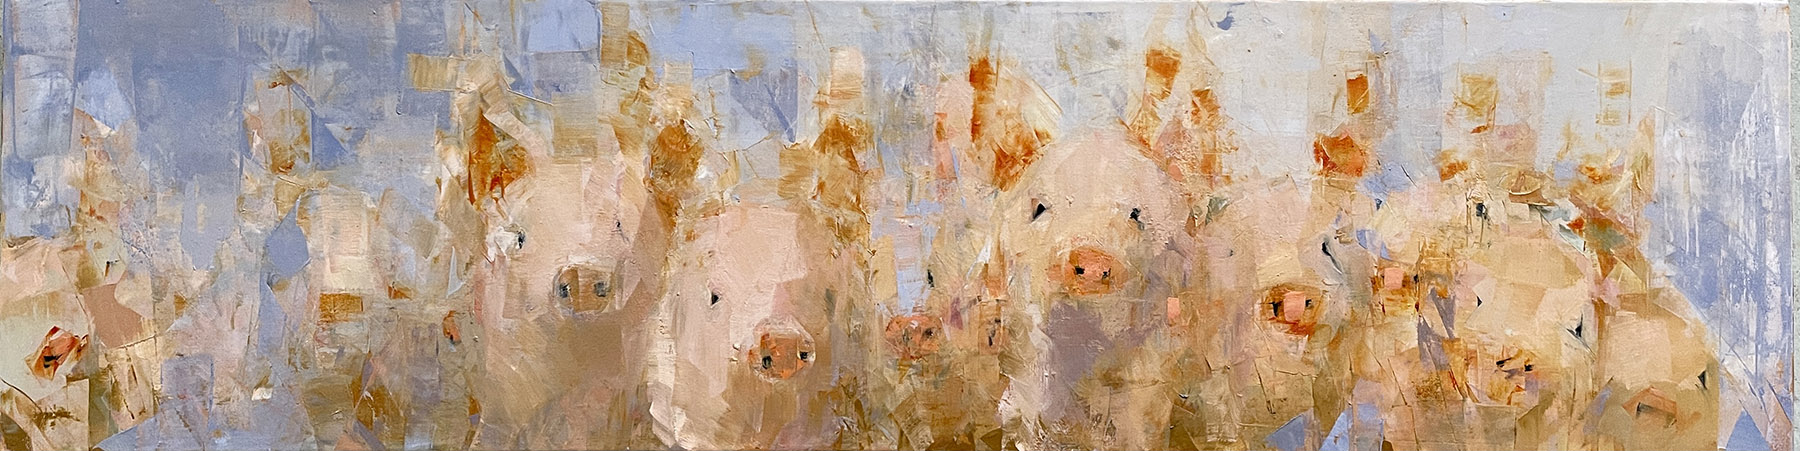 Piglets by Rebecca Kinkead